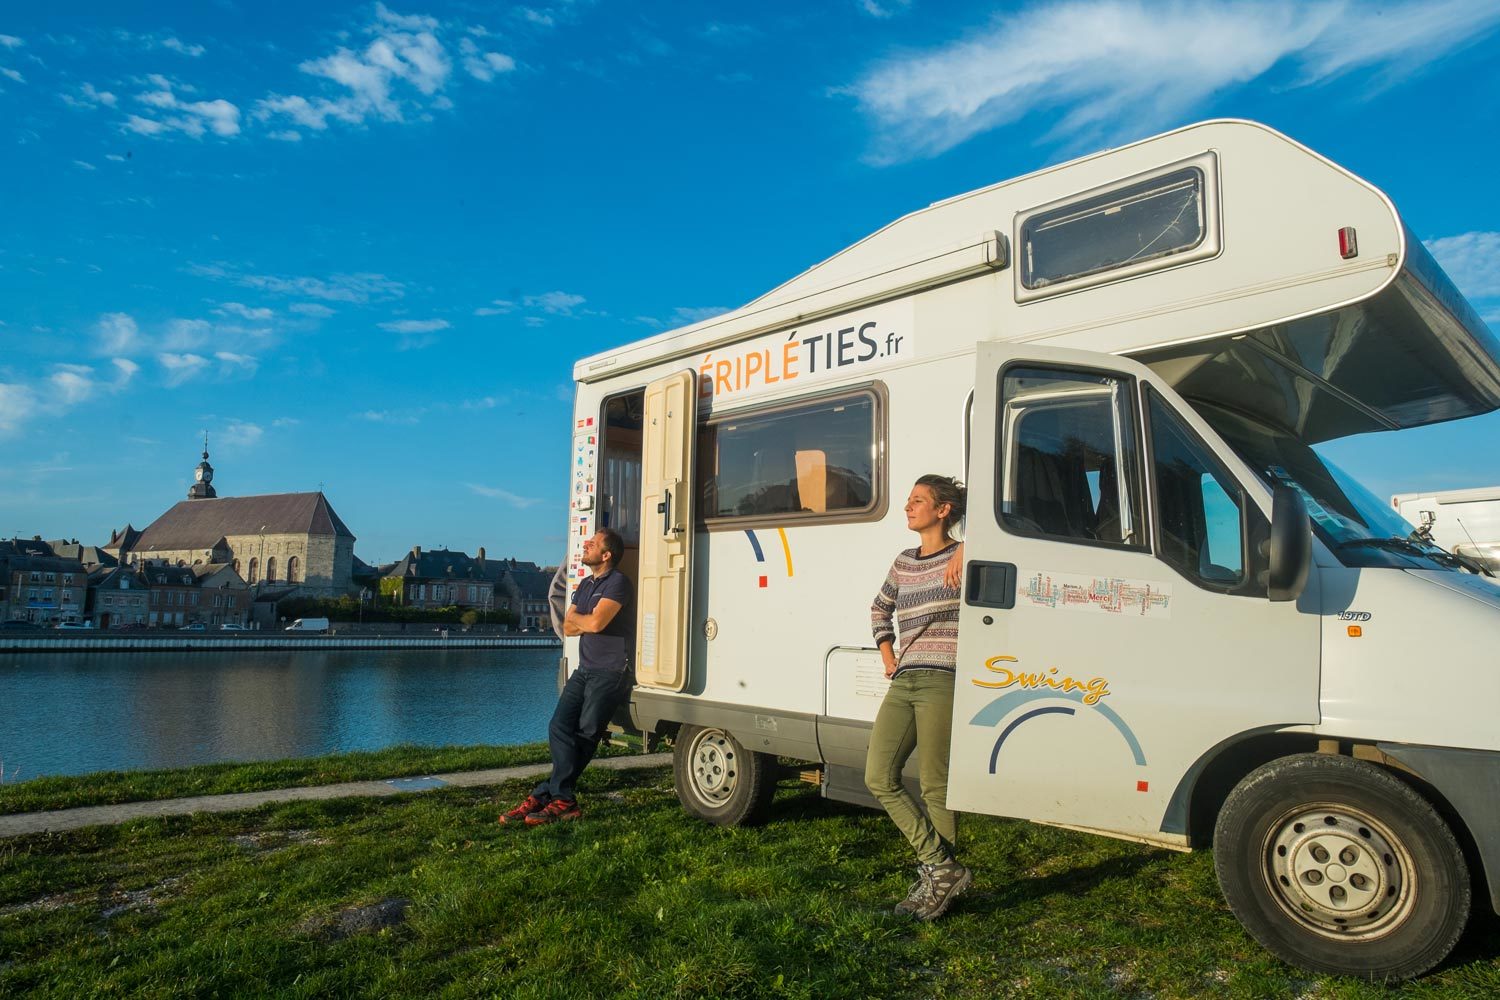 Péripléties voyagent et travaillent sur les routes de France à bord de Swingy leur camping car. Ils ont depuis peu monté une agence de création de contenu.